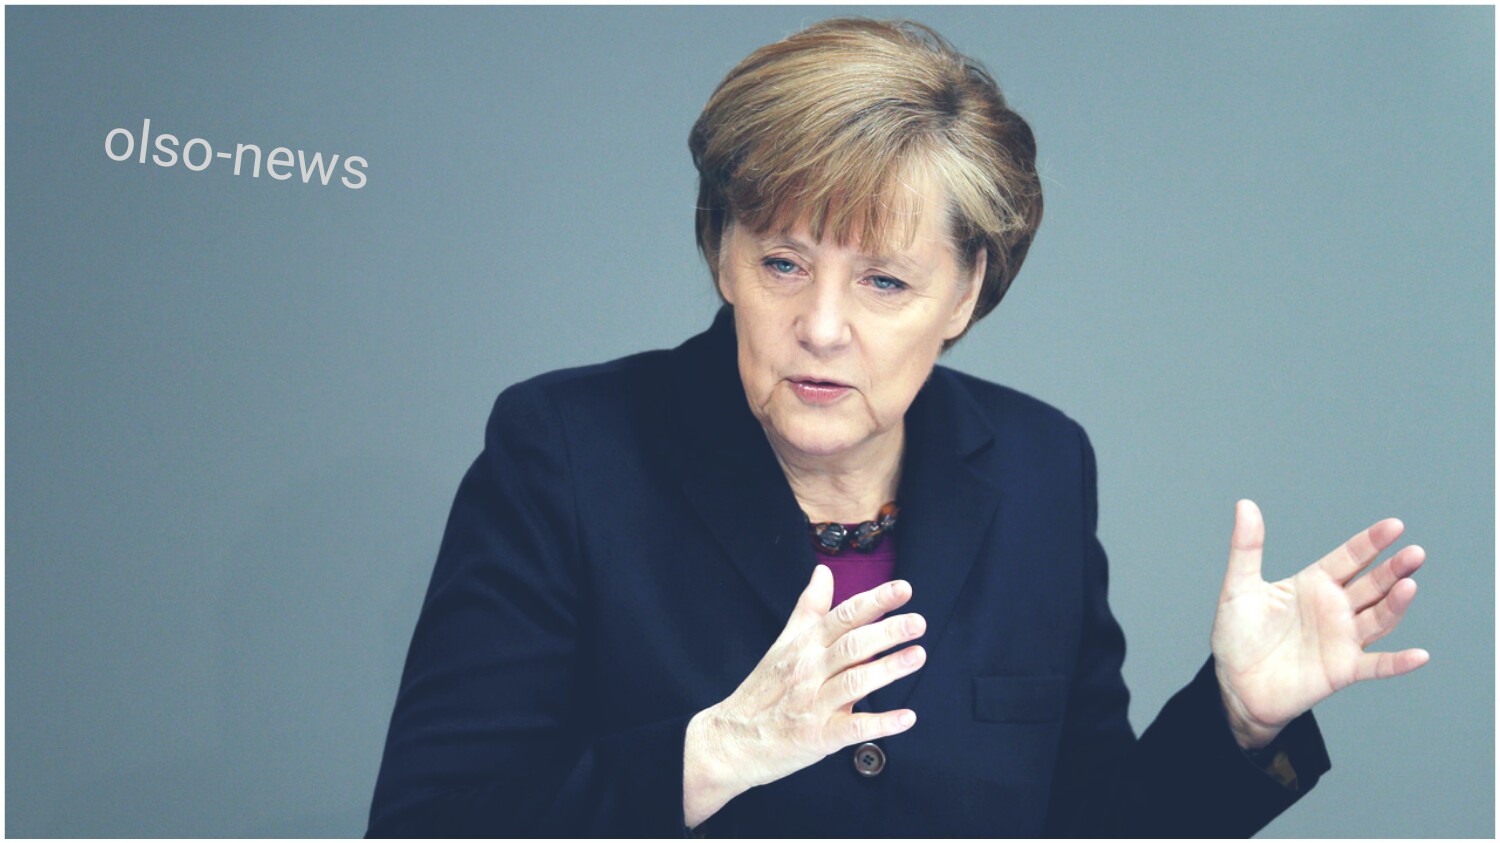 المستشارة الالمانية ميركل تتوقع انسحاب بريطانيا من عضوية دول الاتحاد الاوروبي بشكل مفاجئ هذا السنة